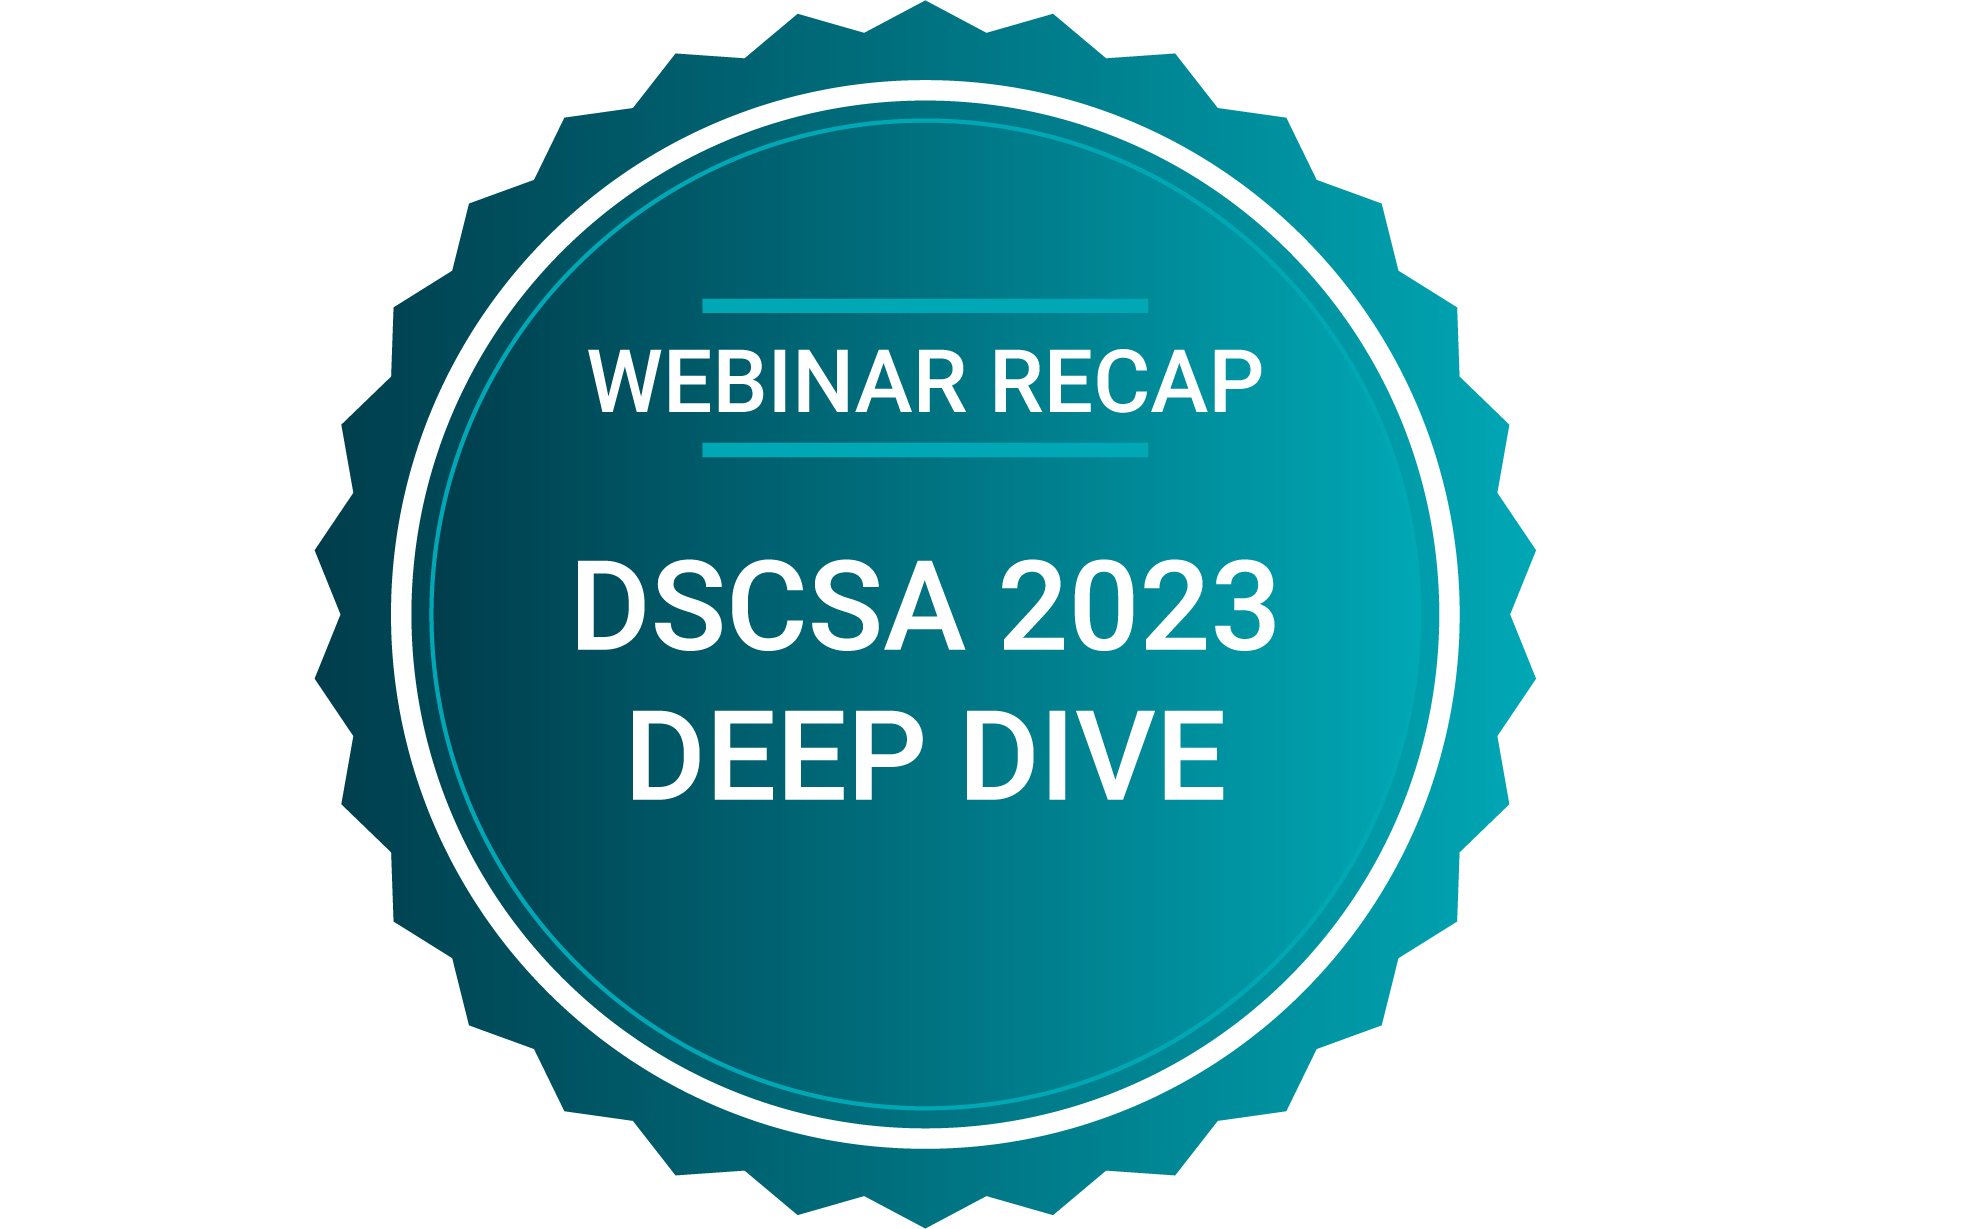 Webinar Recap DSCSA 2023 for Deep Dive